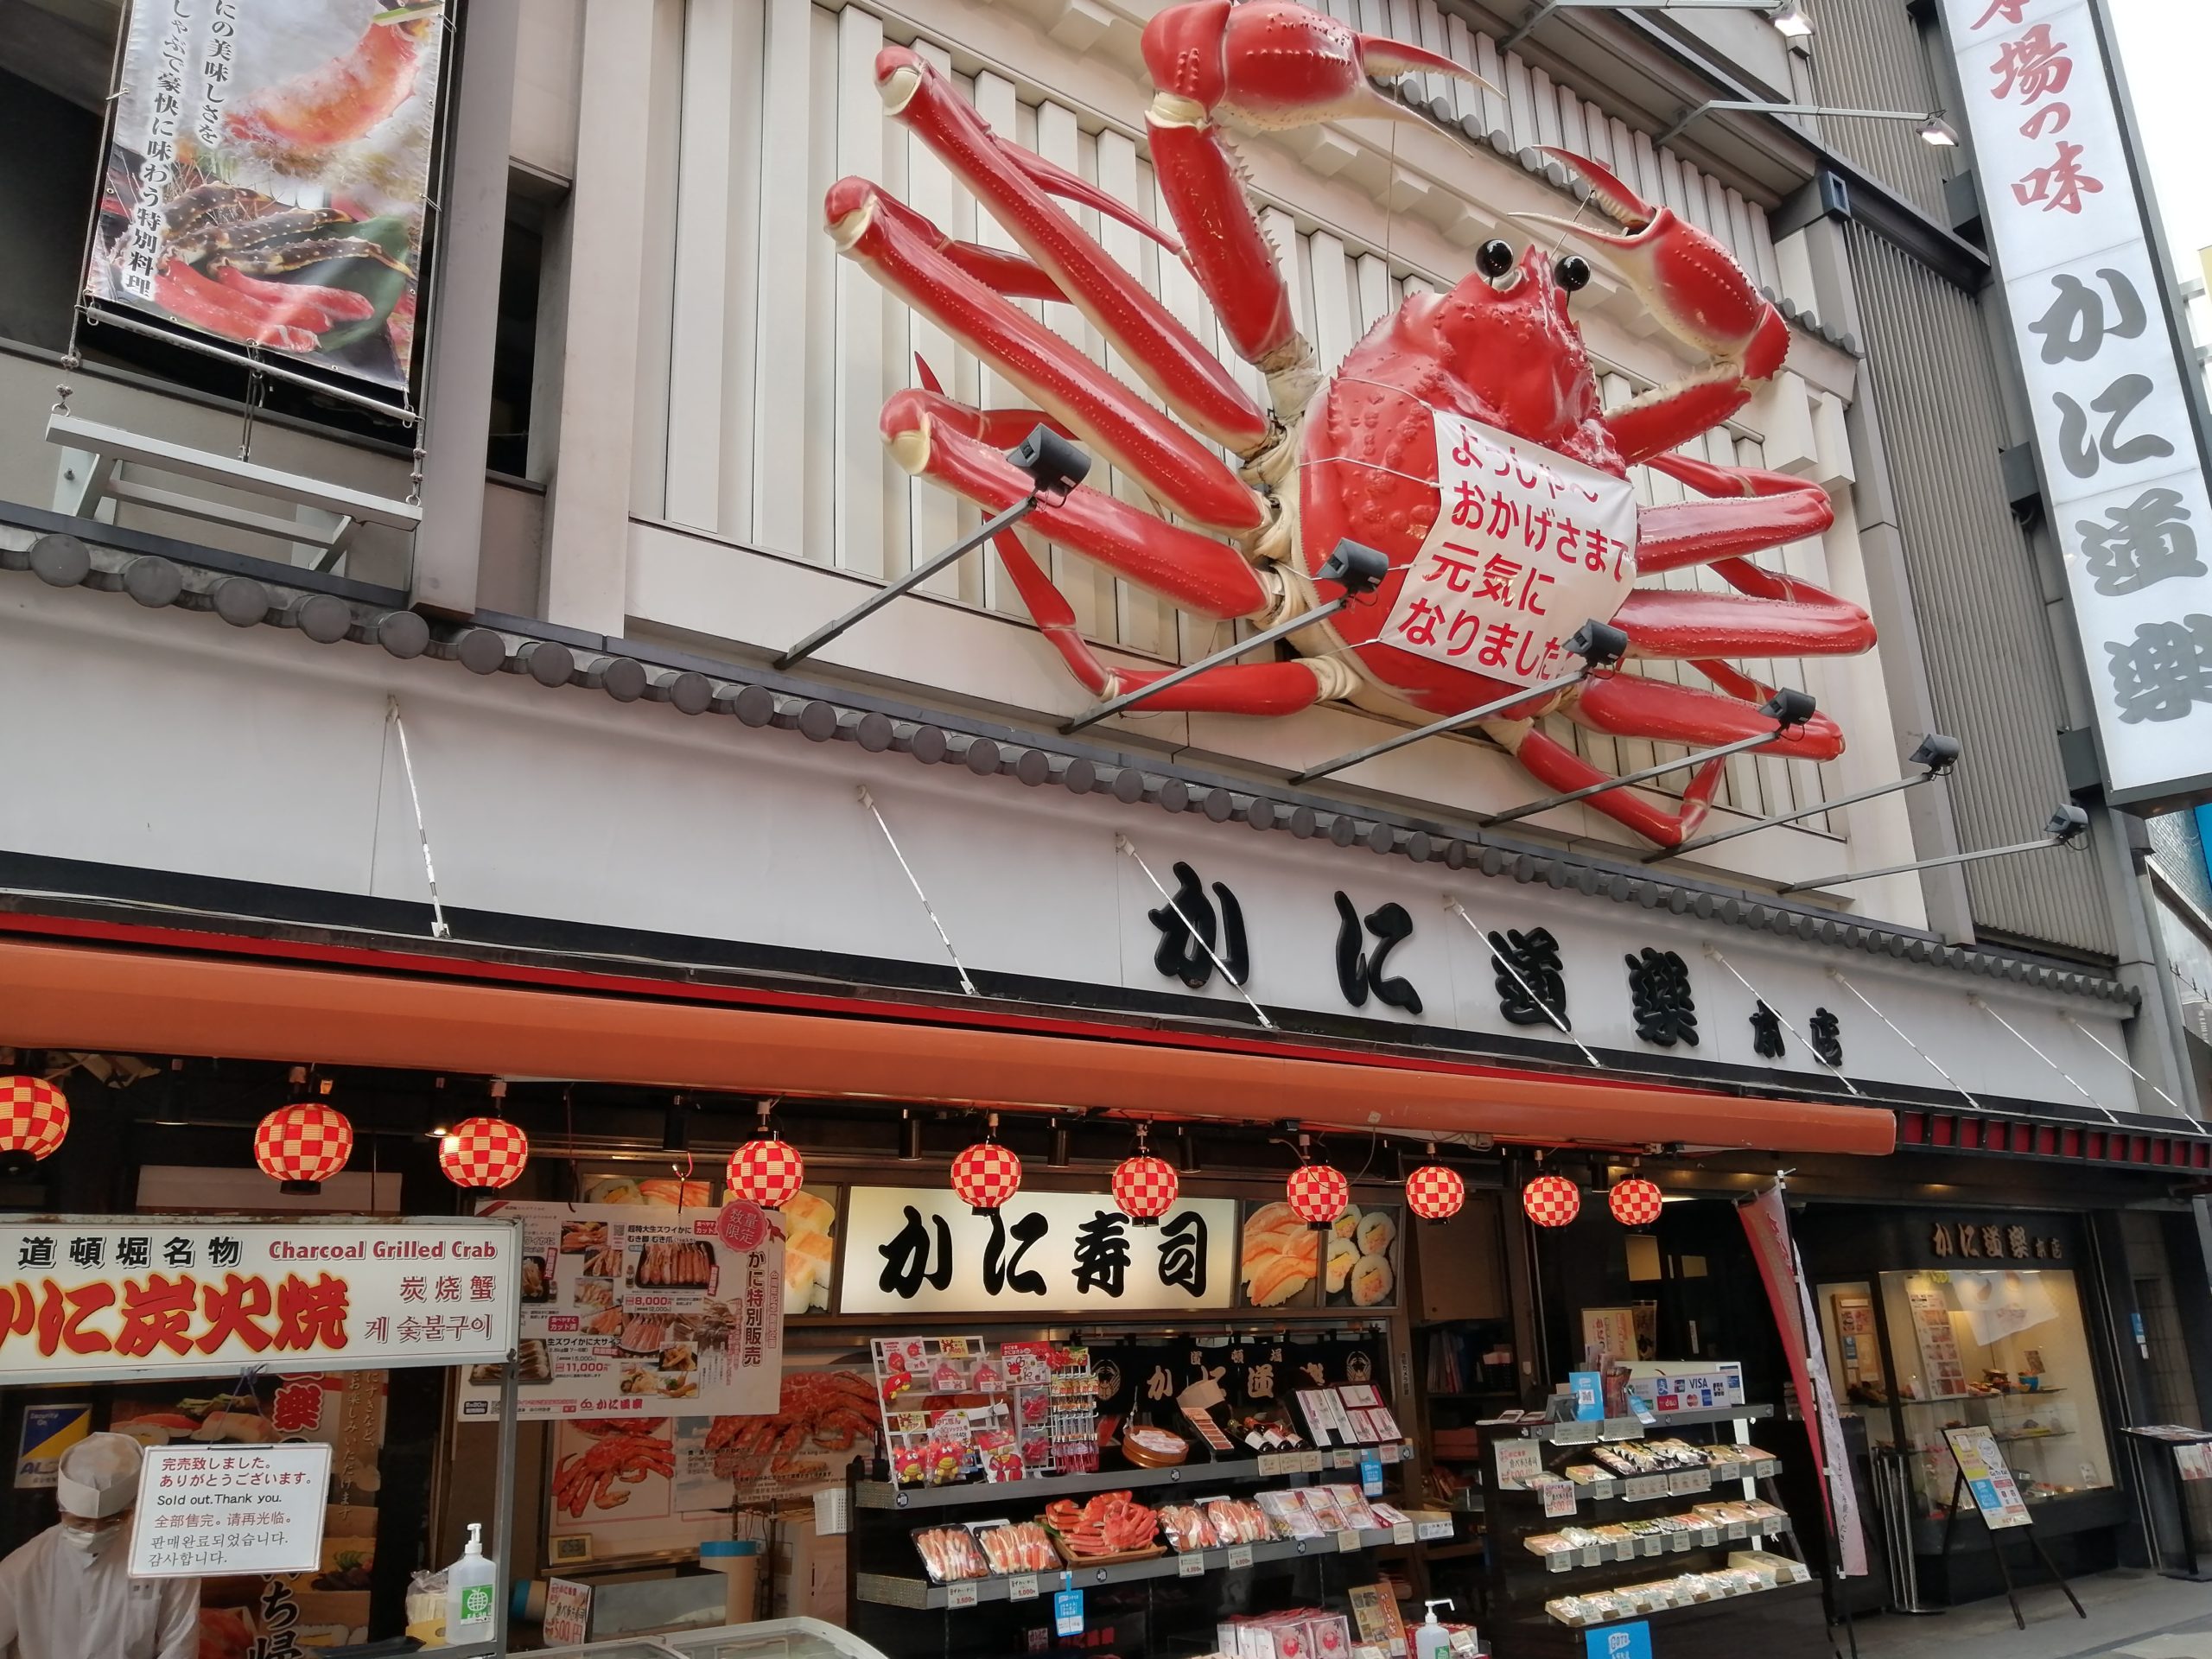 大阪難波 かに道楽本店でランチ 大阪飲食キャンペーン6000ポイント還元 しげしげブログ